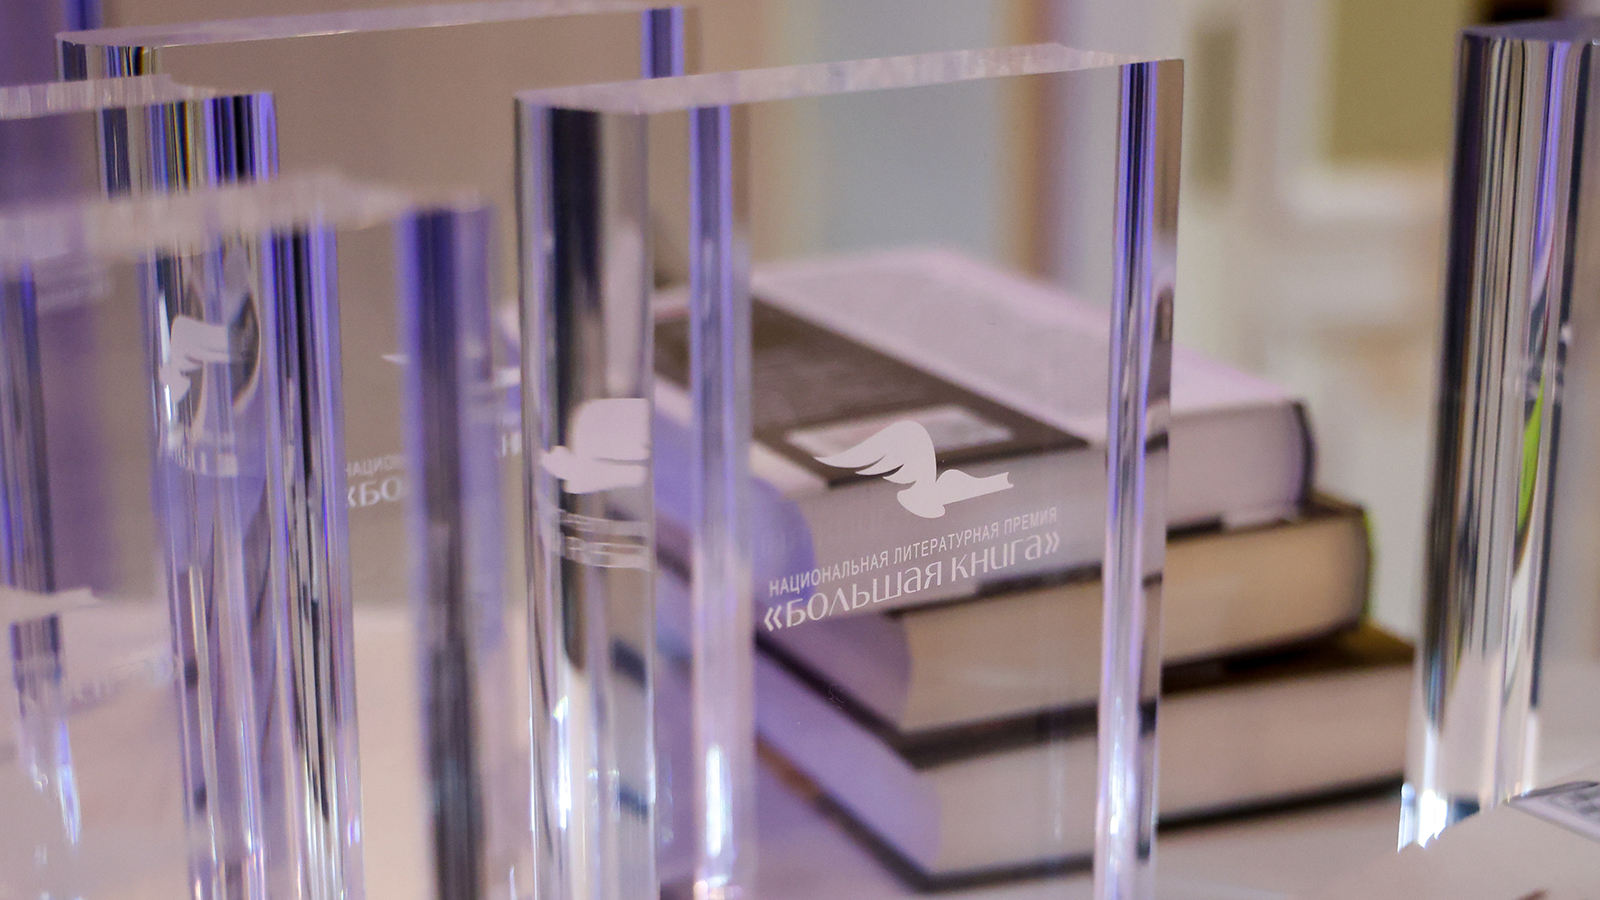 Романы Пелевина и Драгунского вошли в лонг-лист номинантов на премию Большая книга